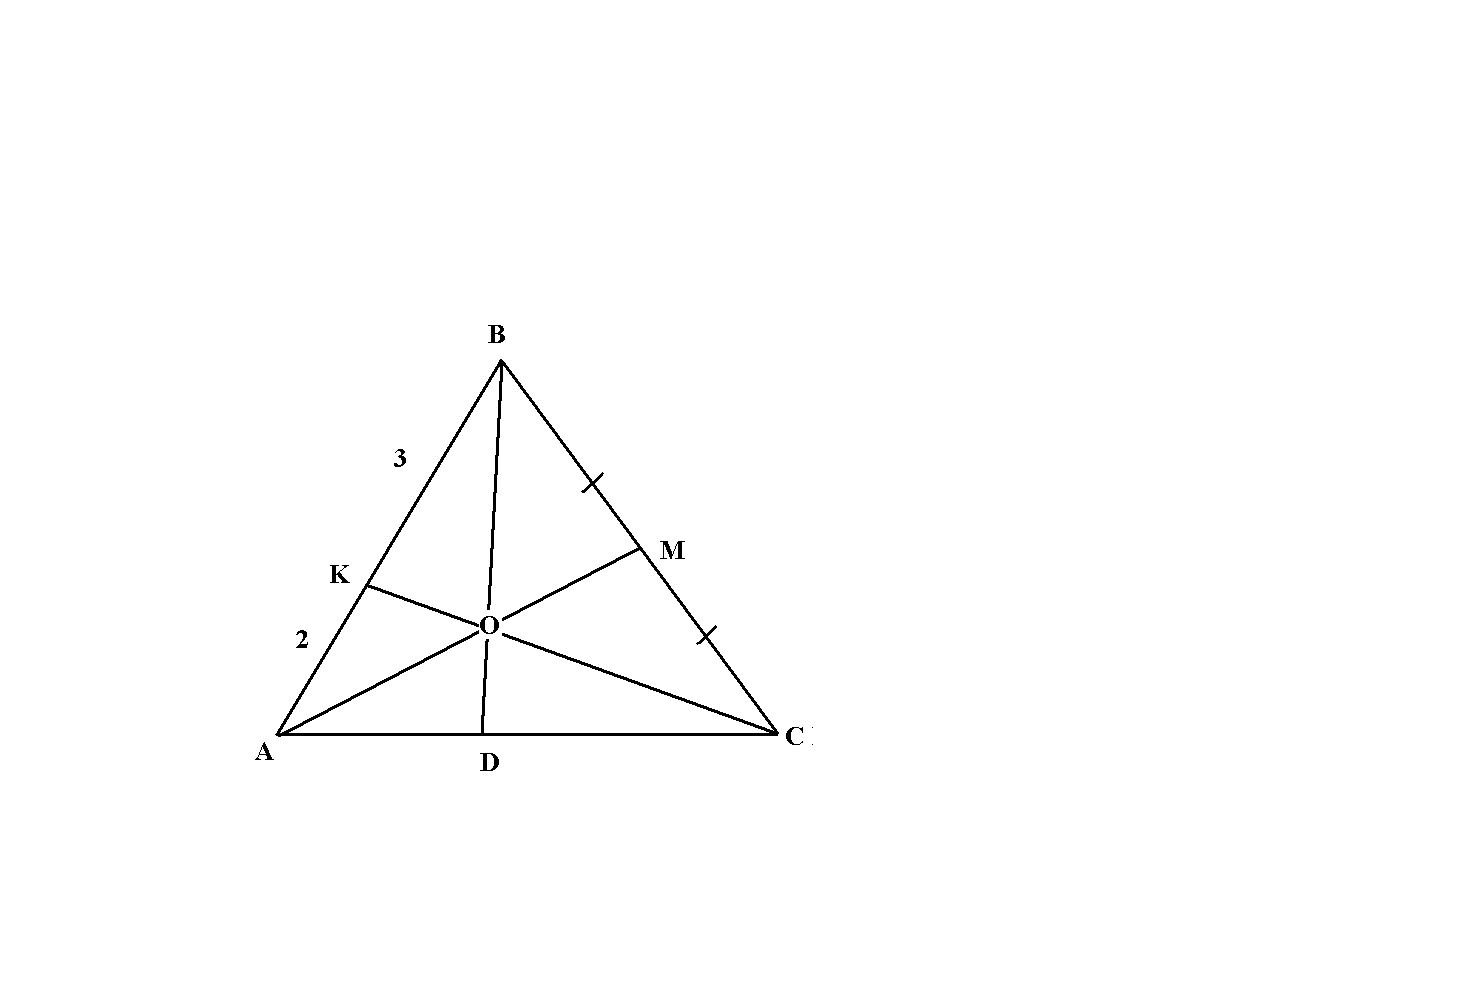 В равностороннем треугольнике авс провели медиану ам. Аватарка треугольник. Критерий серий на медиане. На продолжение Медианы BM треугольника ABC отмечена точка d так что BM MD. AK:KB=1:2.